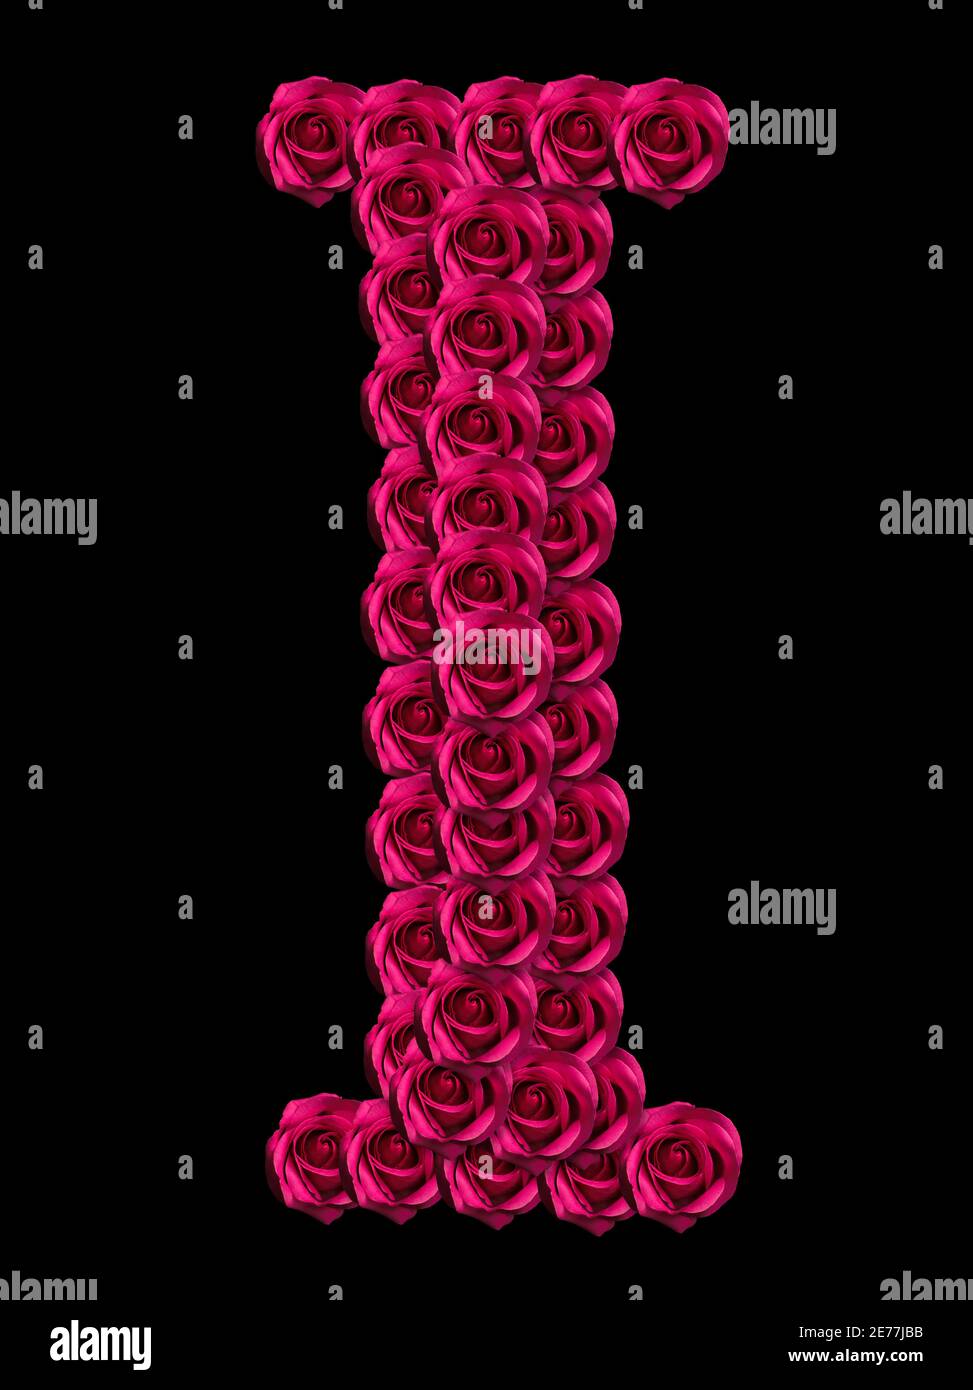 Concepto romántico imagen de una letra mayúscula hecha de rosas rojas. Aislado sobre fondo negro. Elemento de diseño para el amor o temas de San Valentín Foto de stock